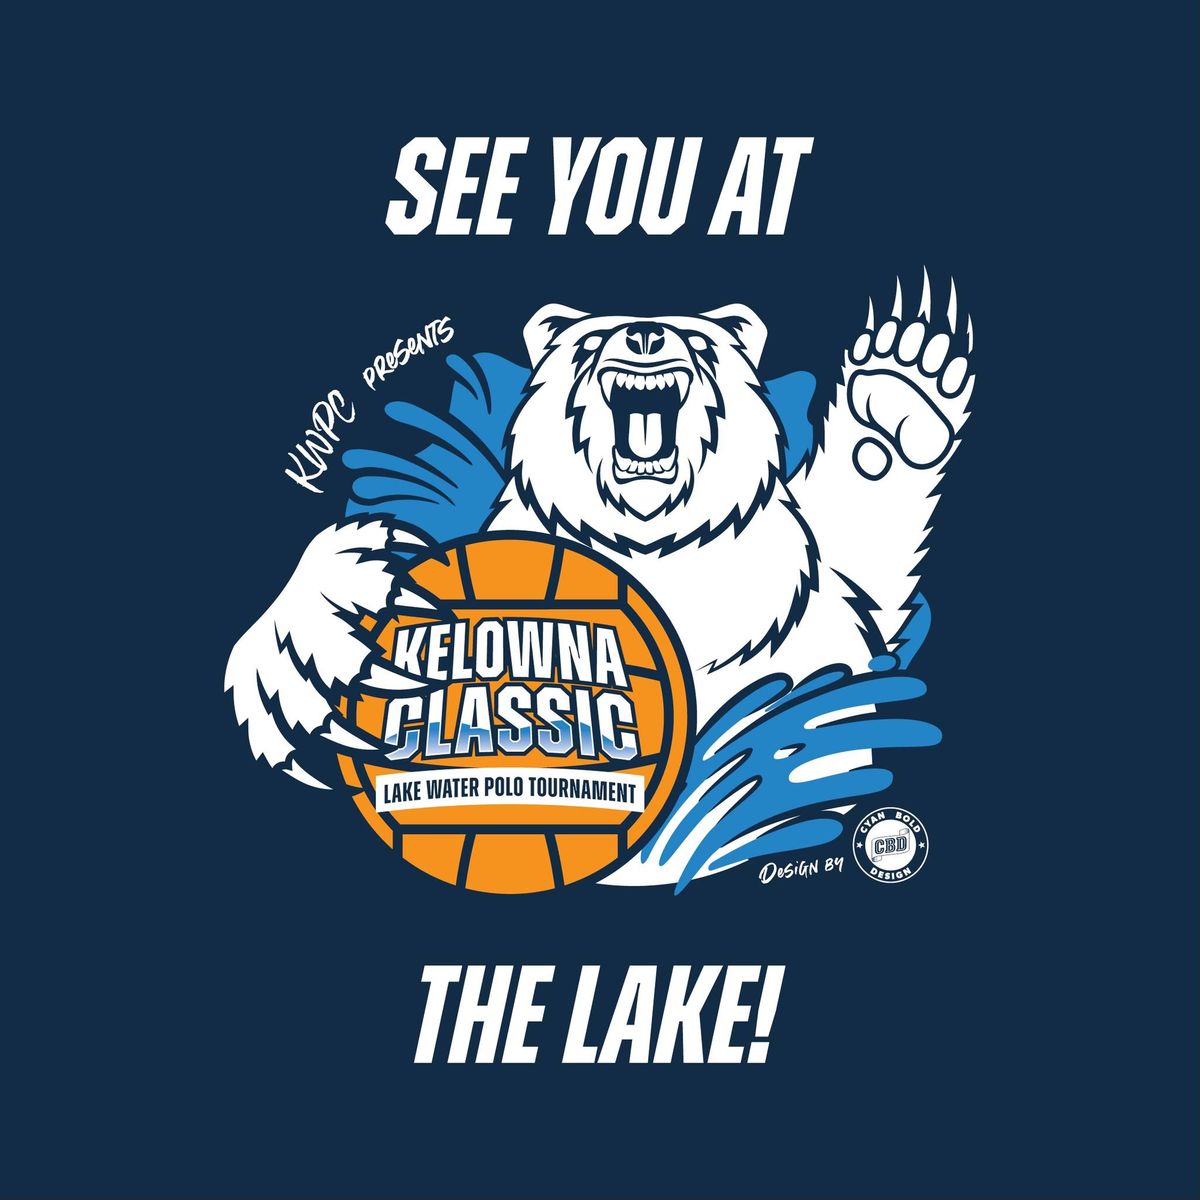 Kelowna Classic Lake Water Polo Tournament